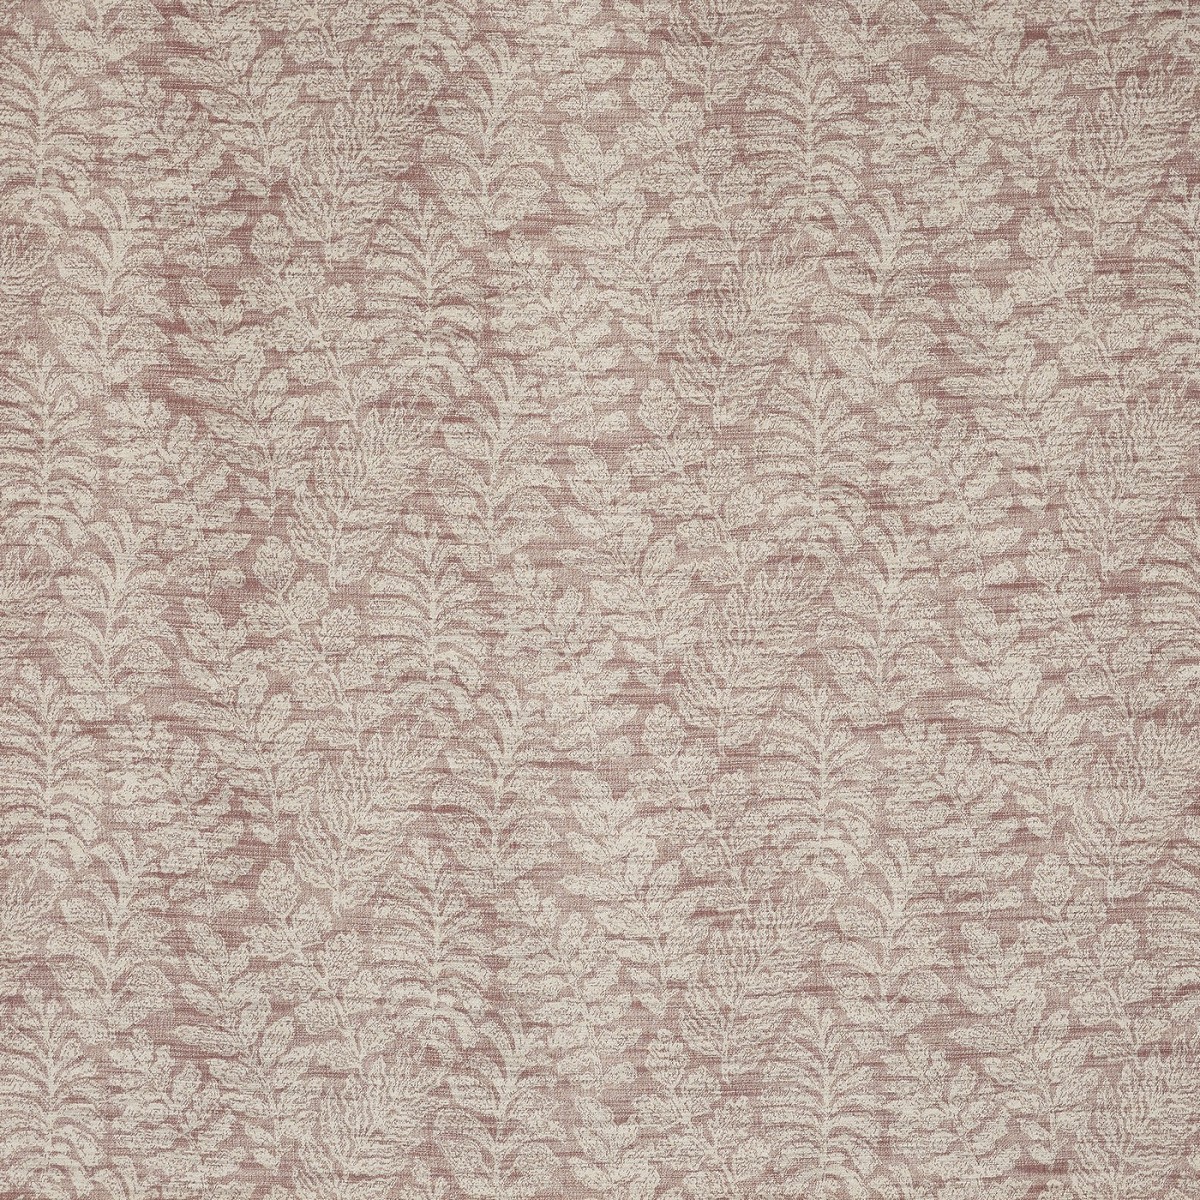 Rafael Tuscan Fabric by Prestigious Textiles